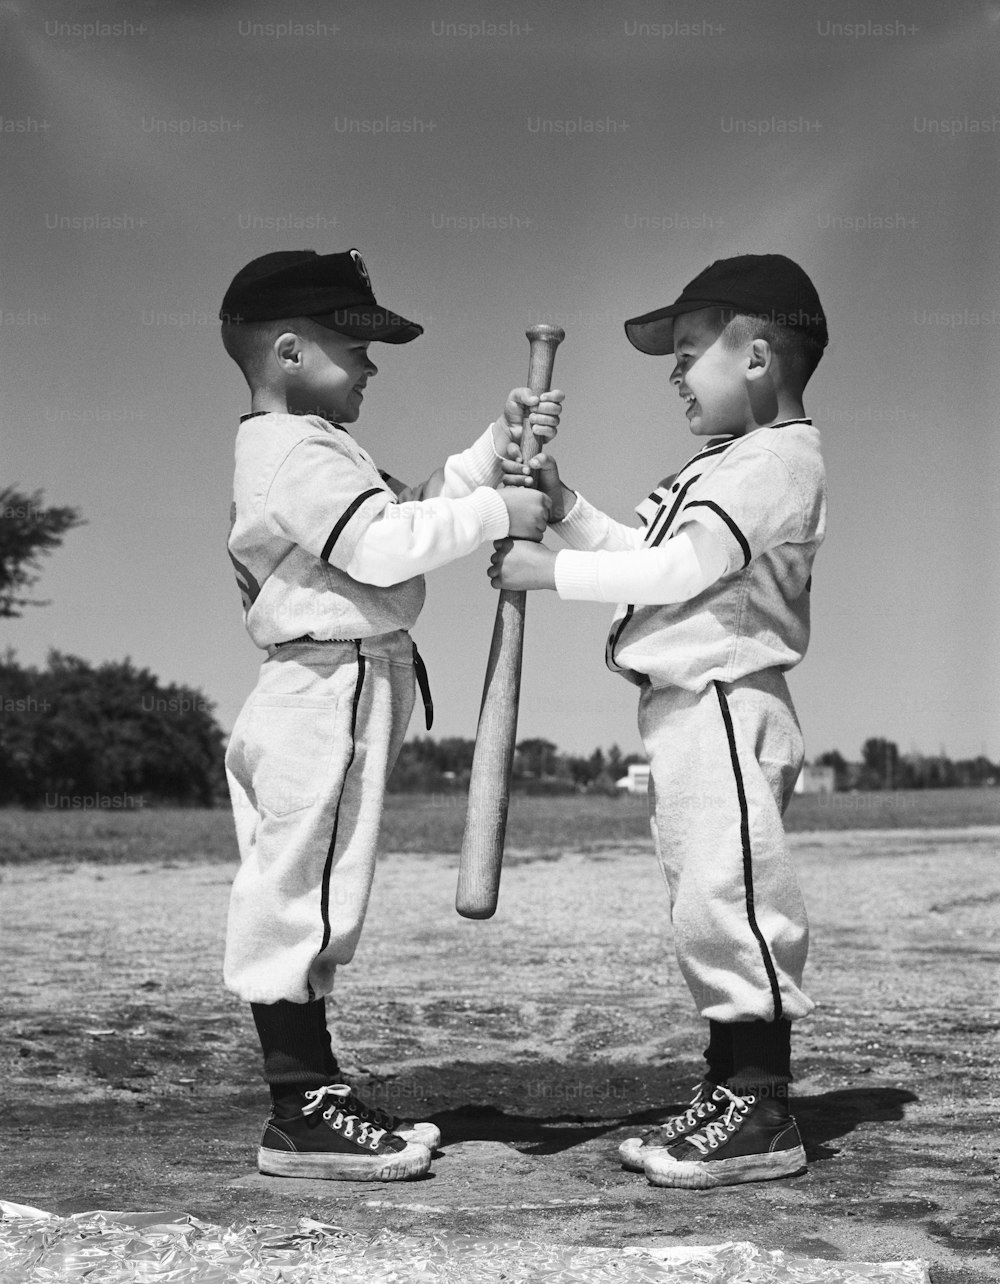 アメリカ合衆国 - 1960年代頃:リトルリーグのユニフォームを着た2人の少年が、野球のバットを持って向かい合っています。